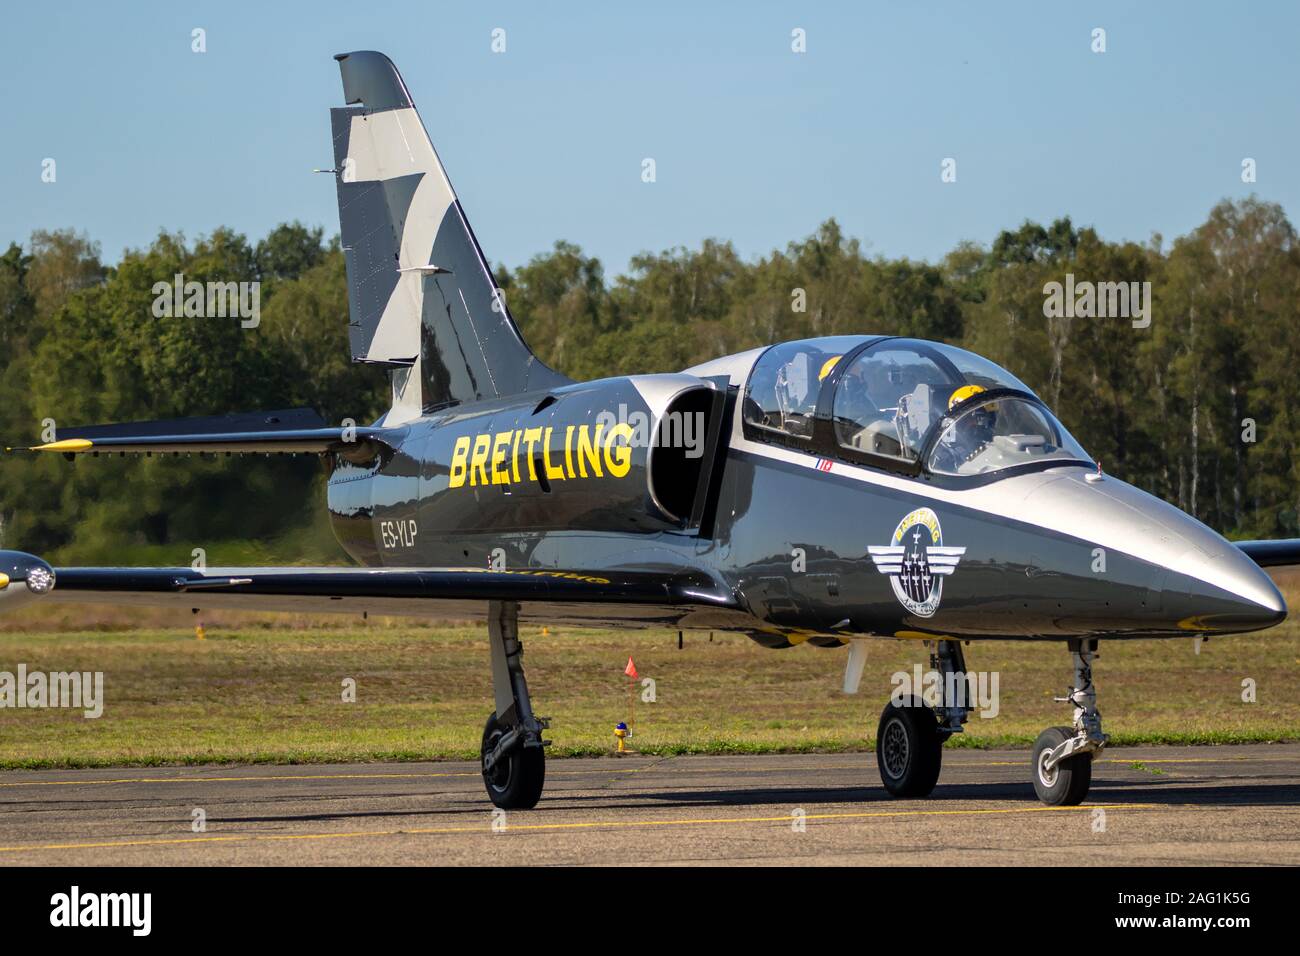 KLEINE-BROGEL, BELGIUM - SEP 14, 2019: Breitling Jet Team Aero L-39 Albatros plane taxiing after landing on Kleine Brogel Airbase. Stock Photo